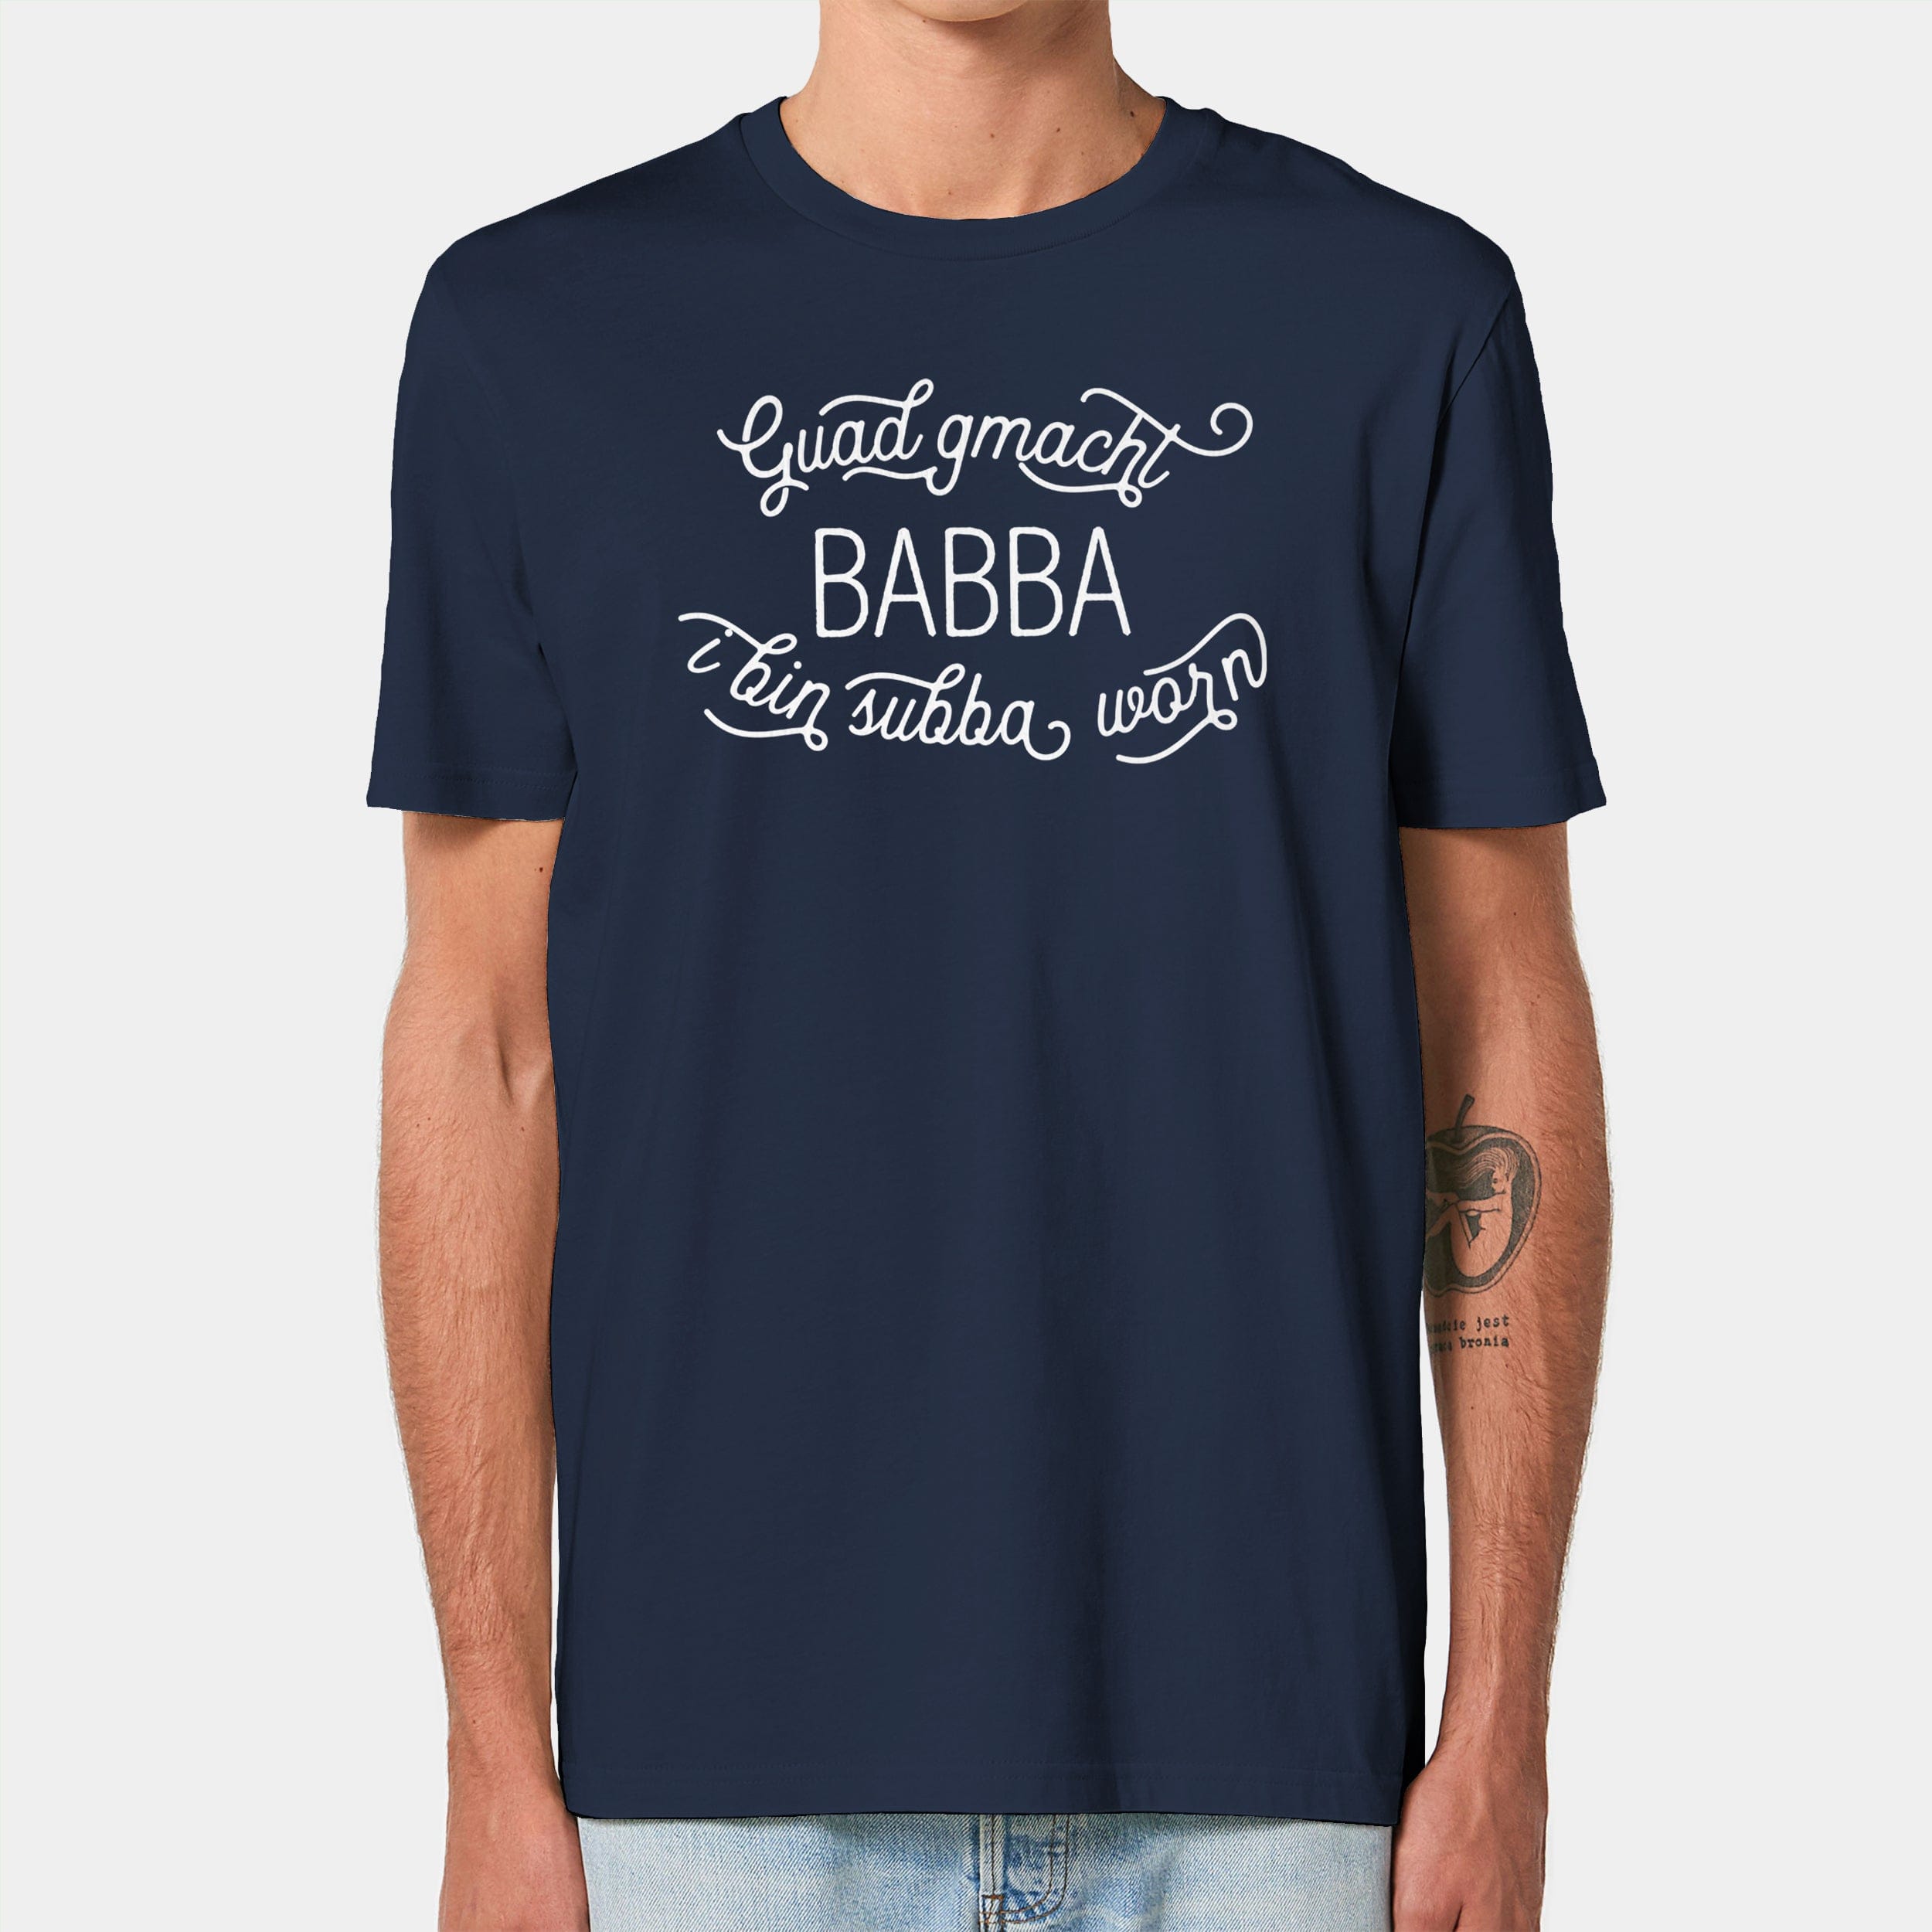 HEITER & LÄSSIG T-Shirt "Guad gmacht Babba" S / navyblau - aus nachhaltiger und fairer Produktion